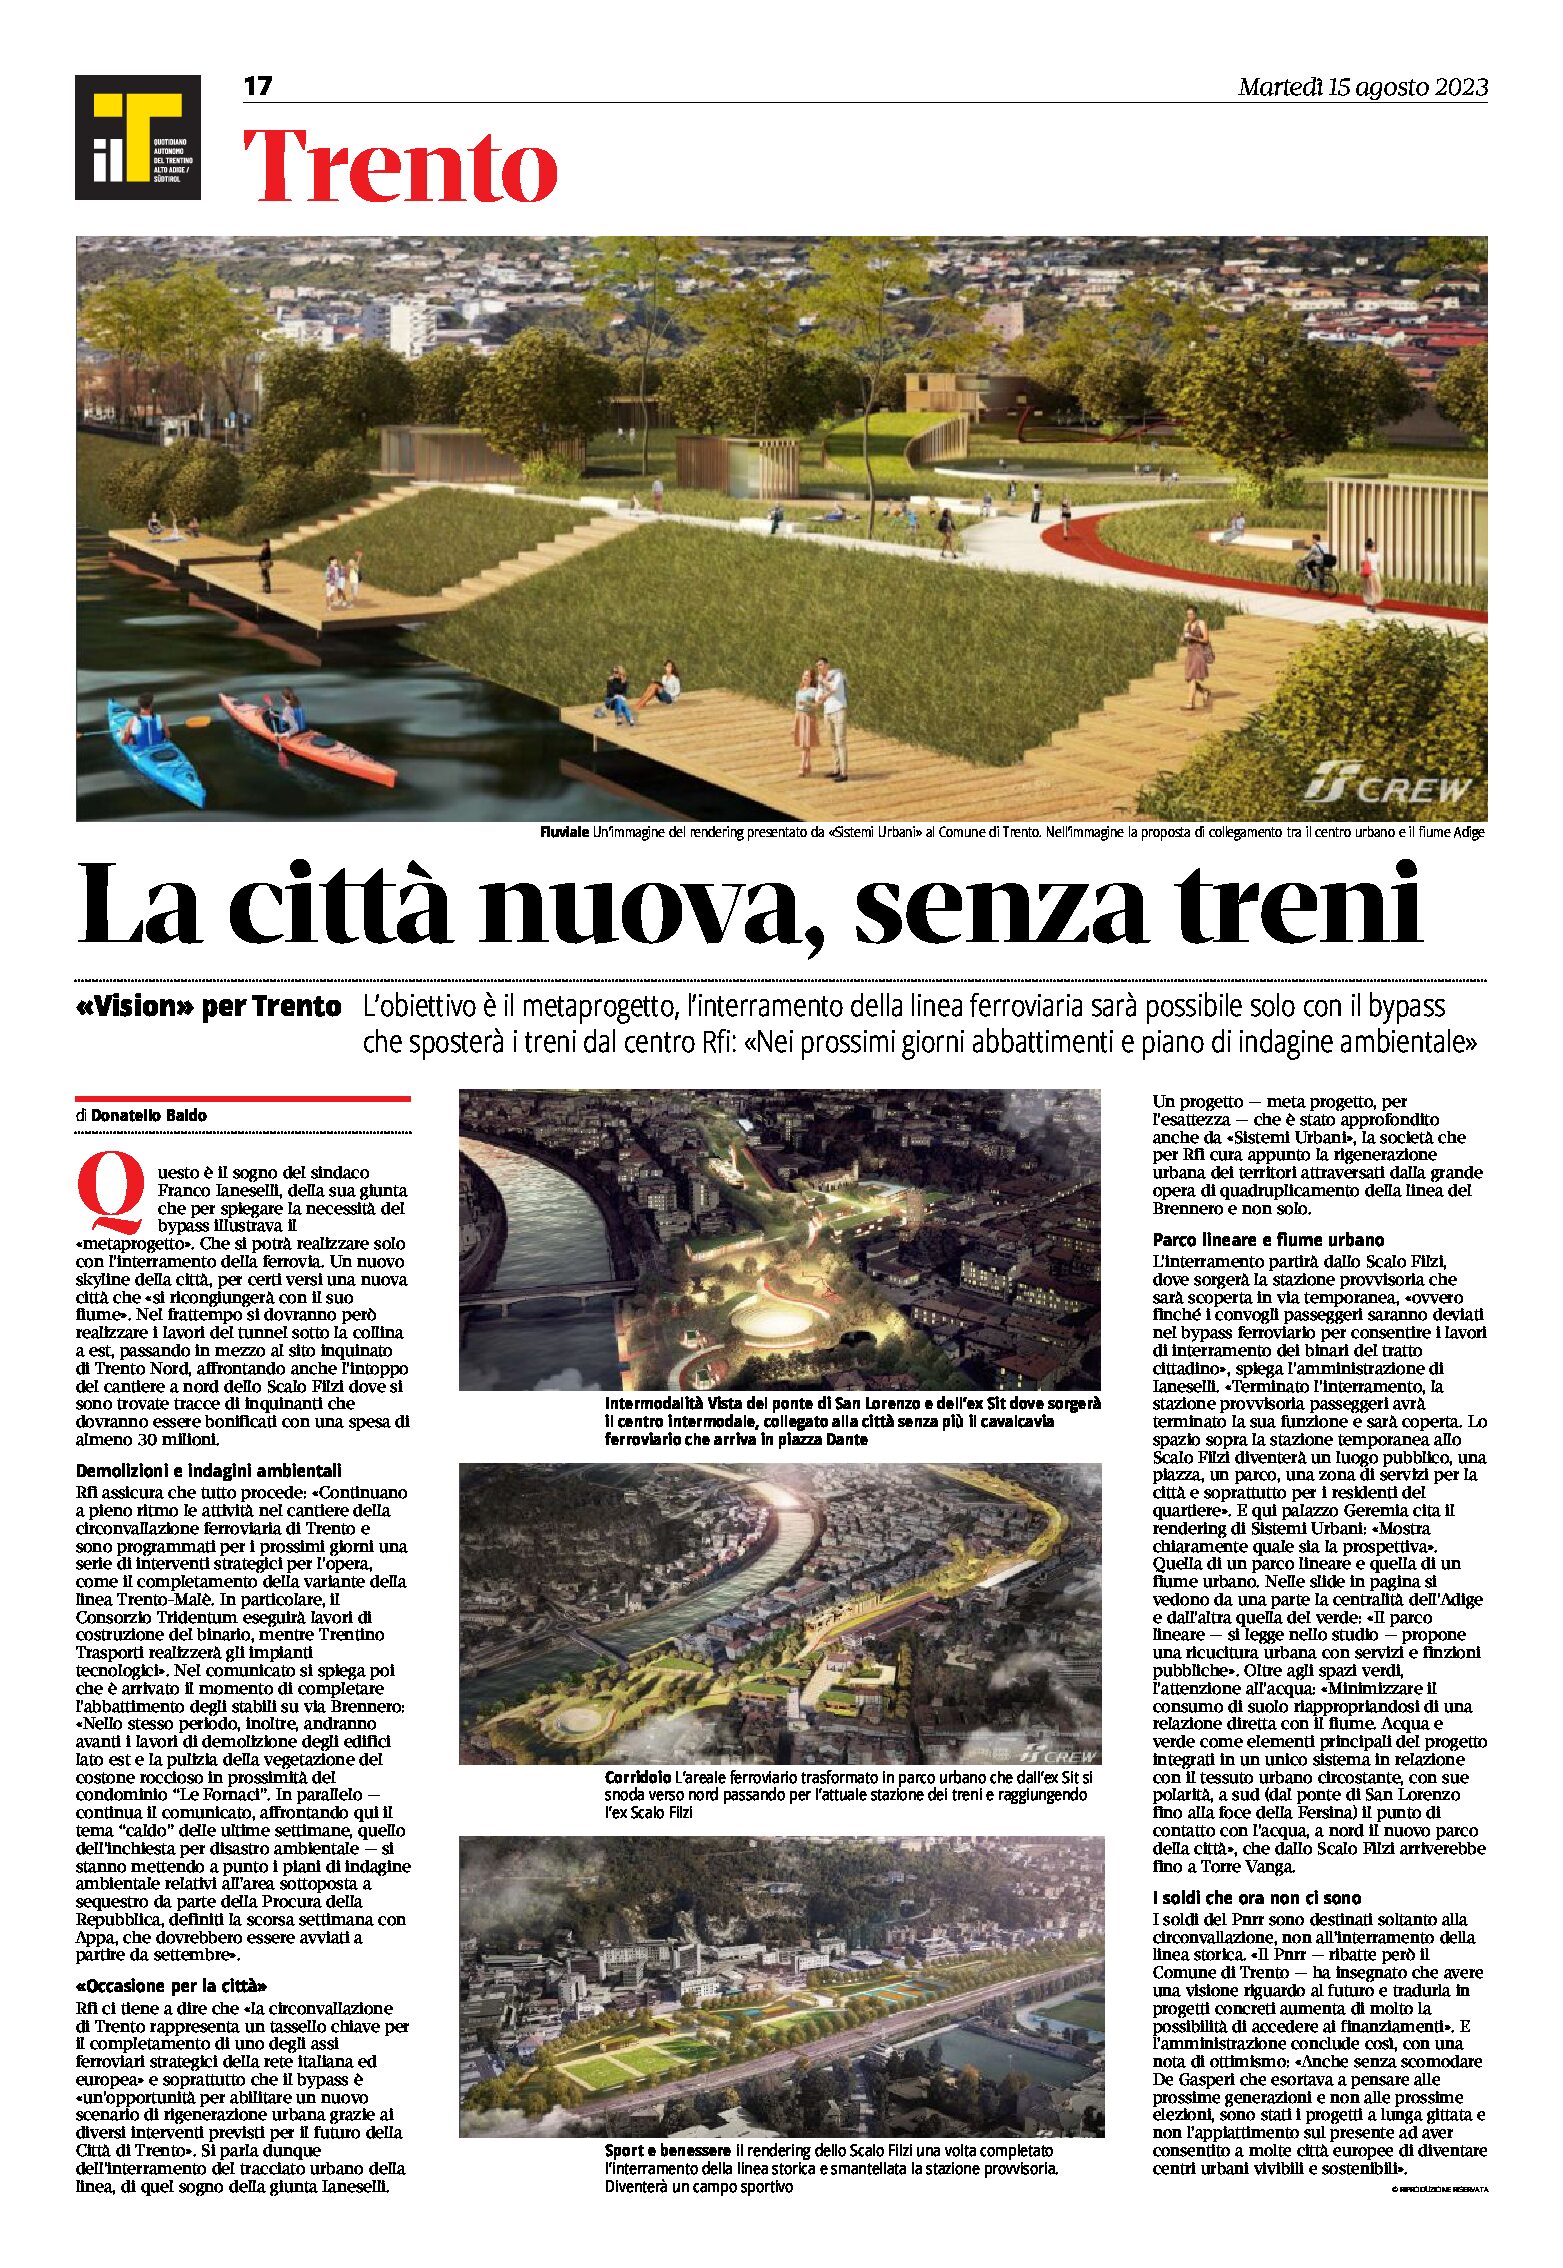 Trento, bypass: la città nuova, senza treni